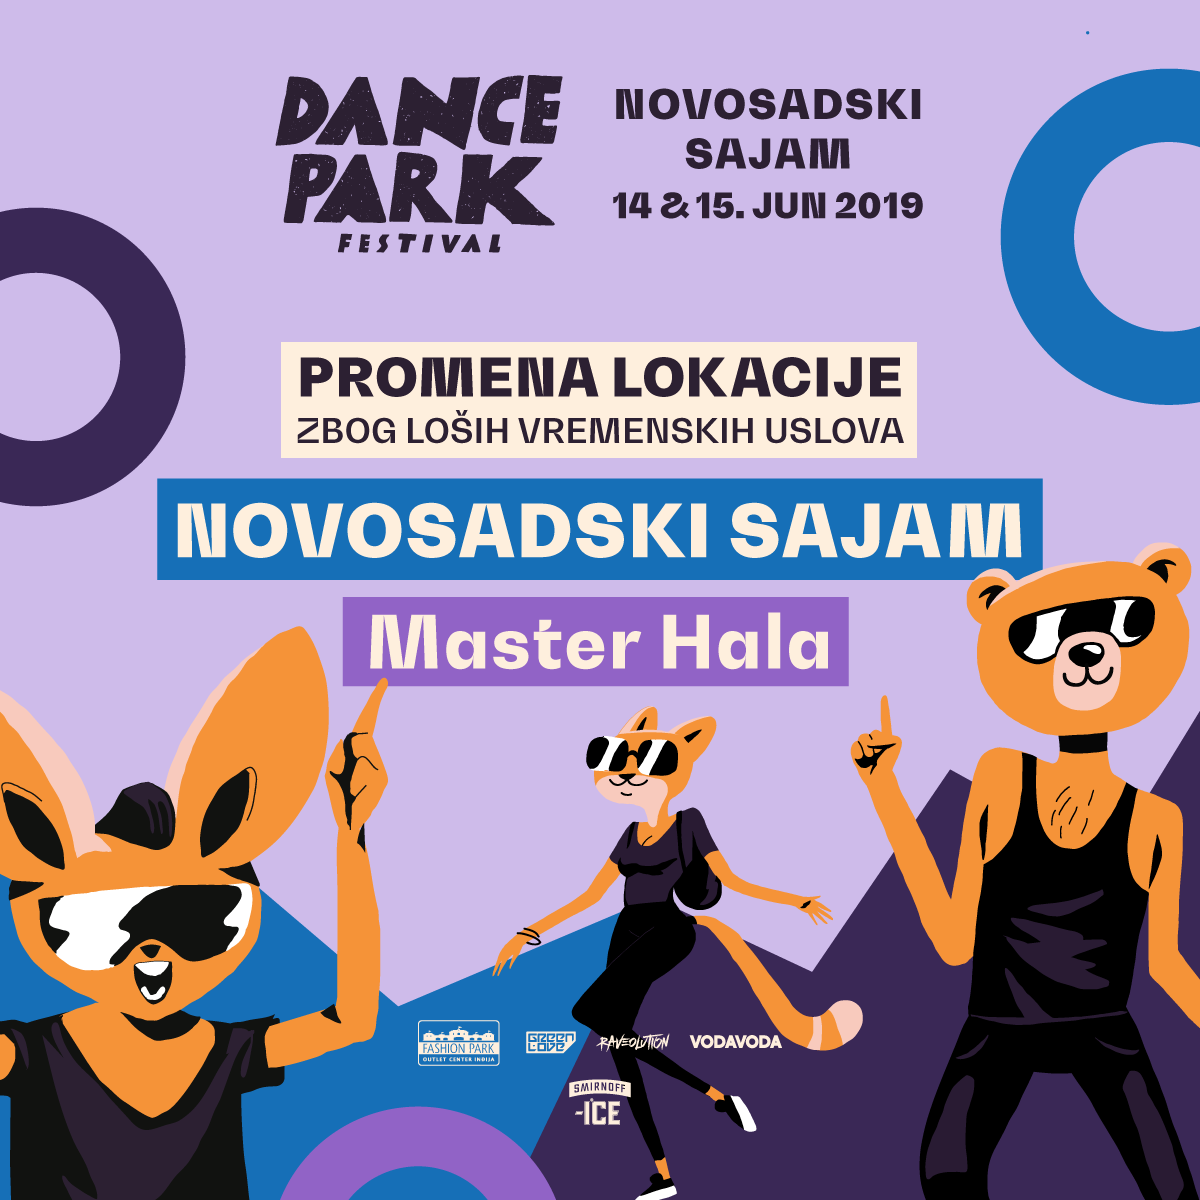 Dance park festival biće održan 14. i 15. juna na Novosadskom sajmu